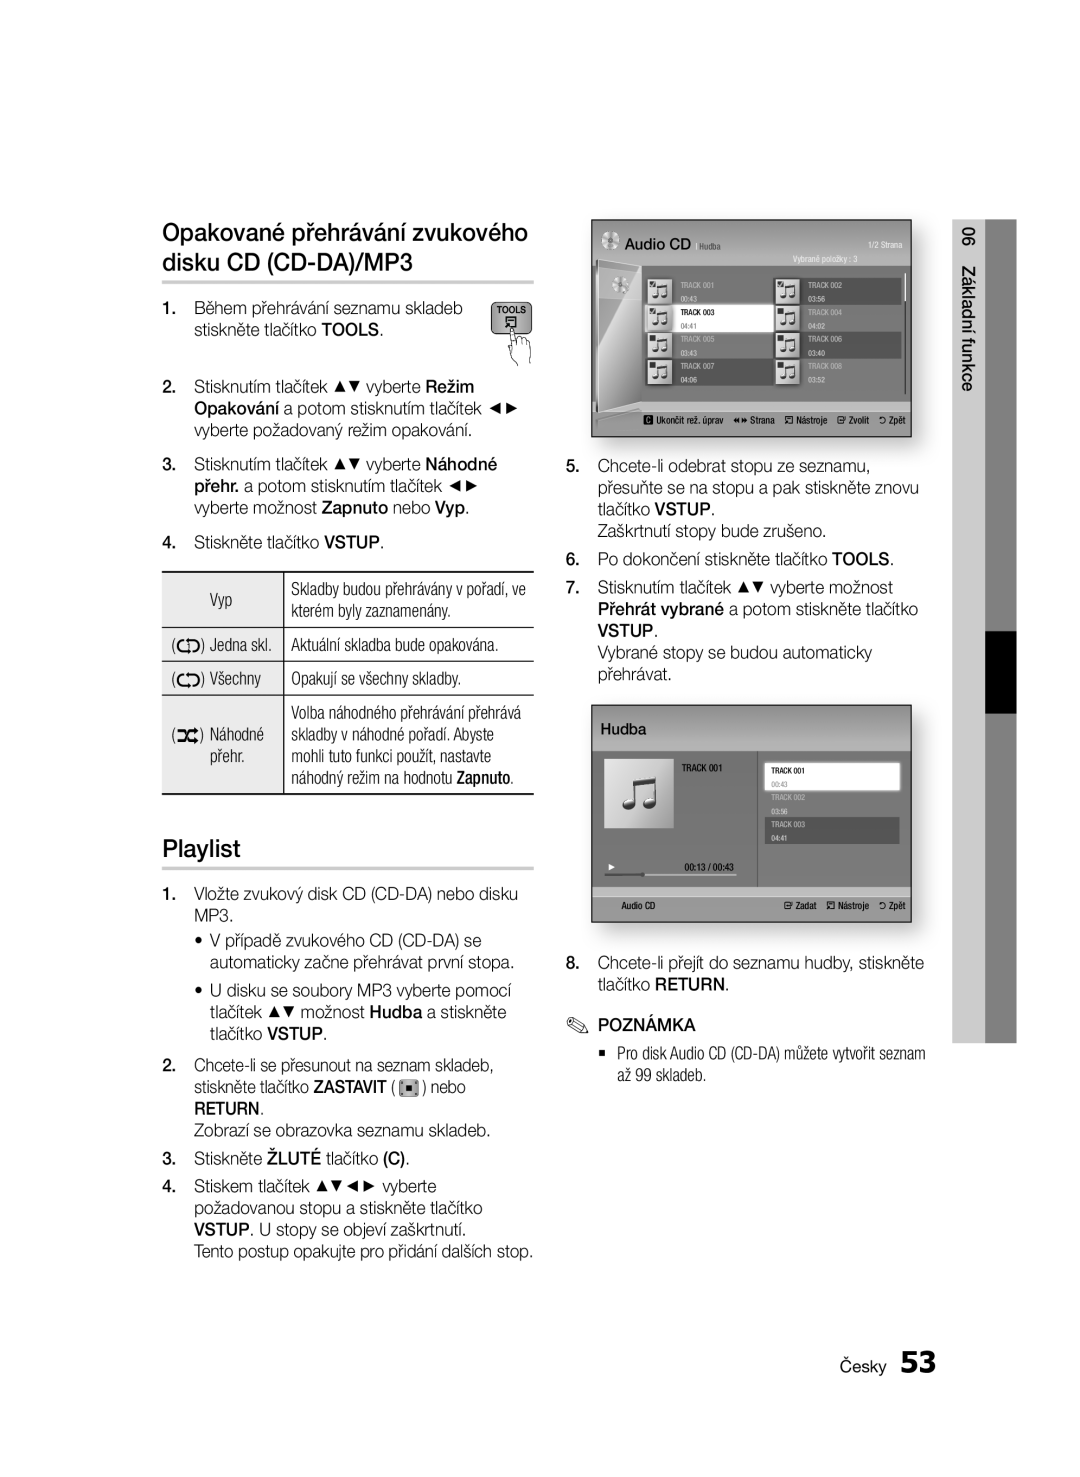 Samsung BD-E6300/EN manual Playlist, Opakované přehrávání zvukového disku CD CD-DA/MP3 